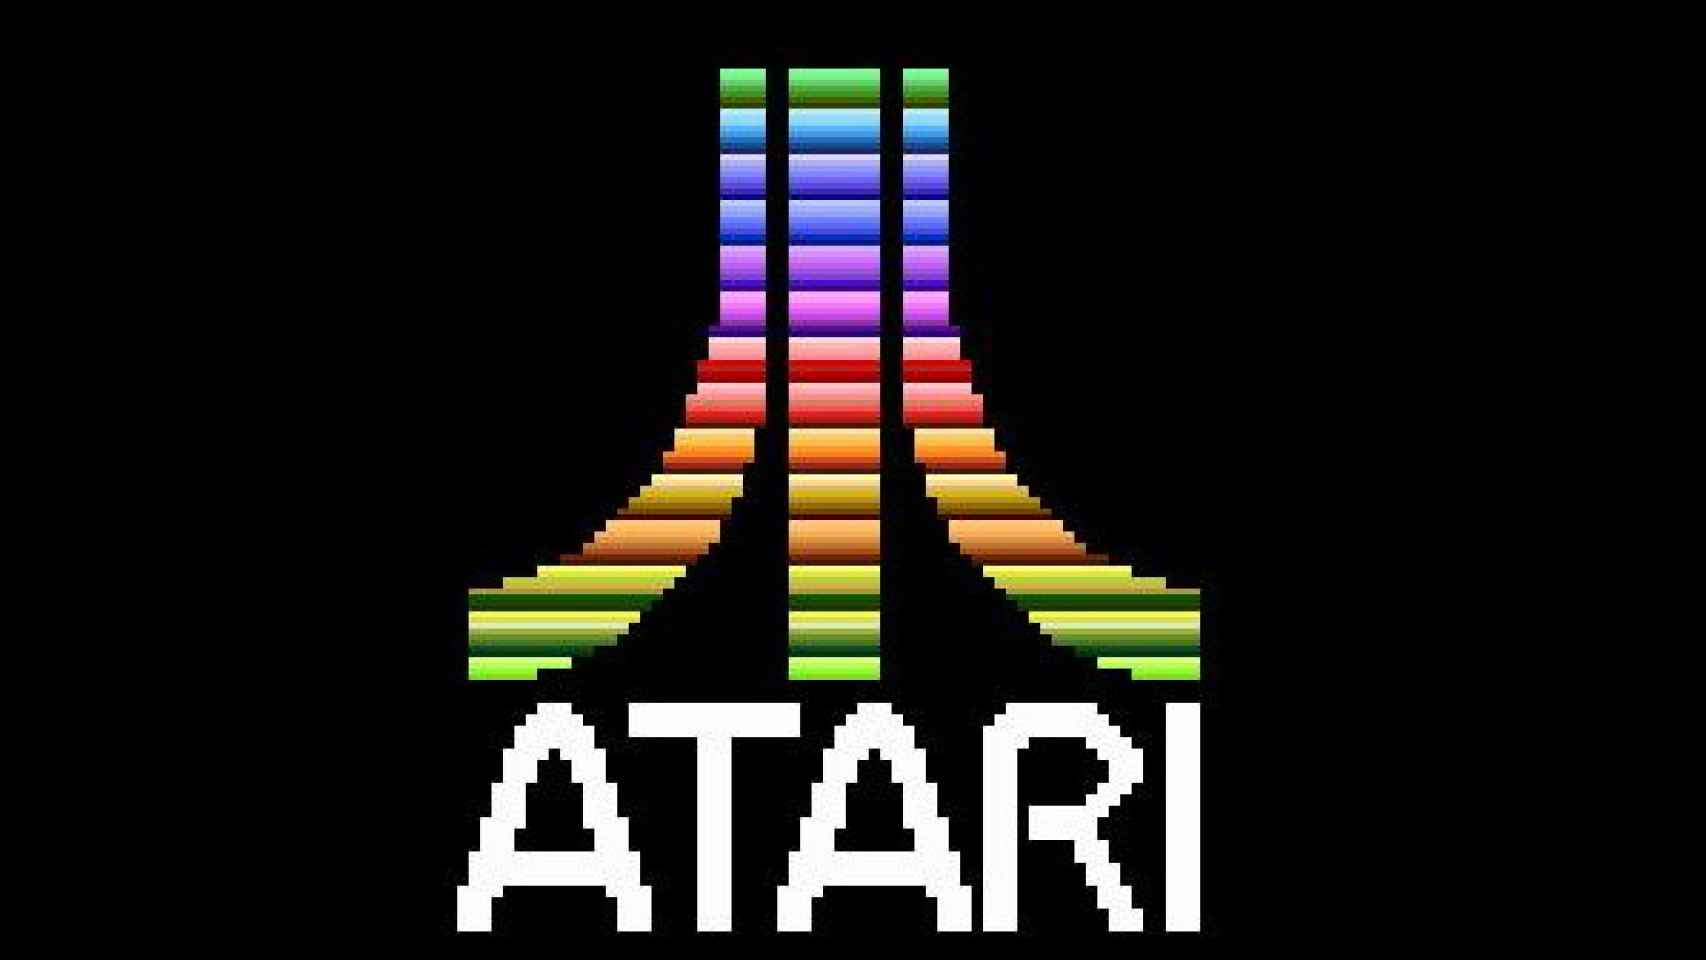 ATARI traerá sus míticos juegos a Android, el primero sería Asteroids